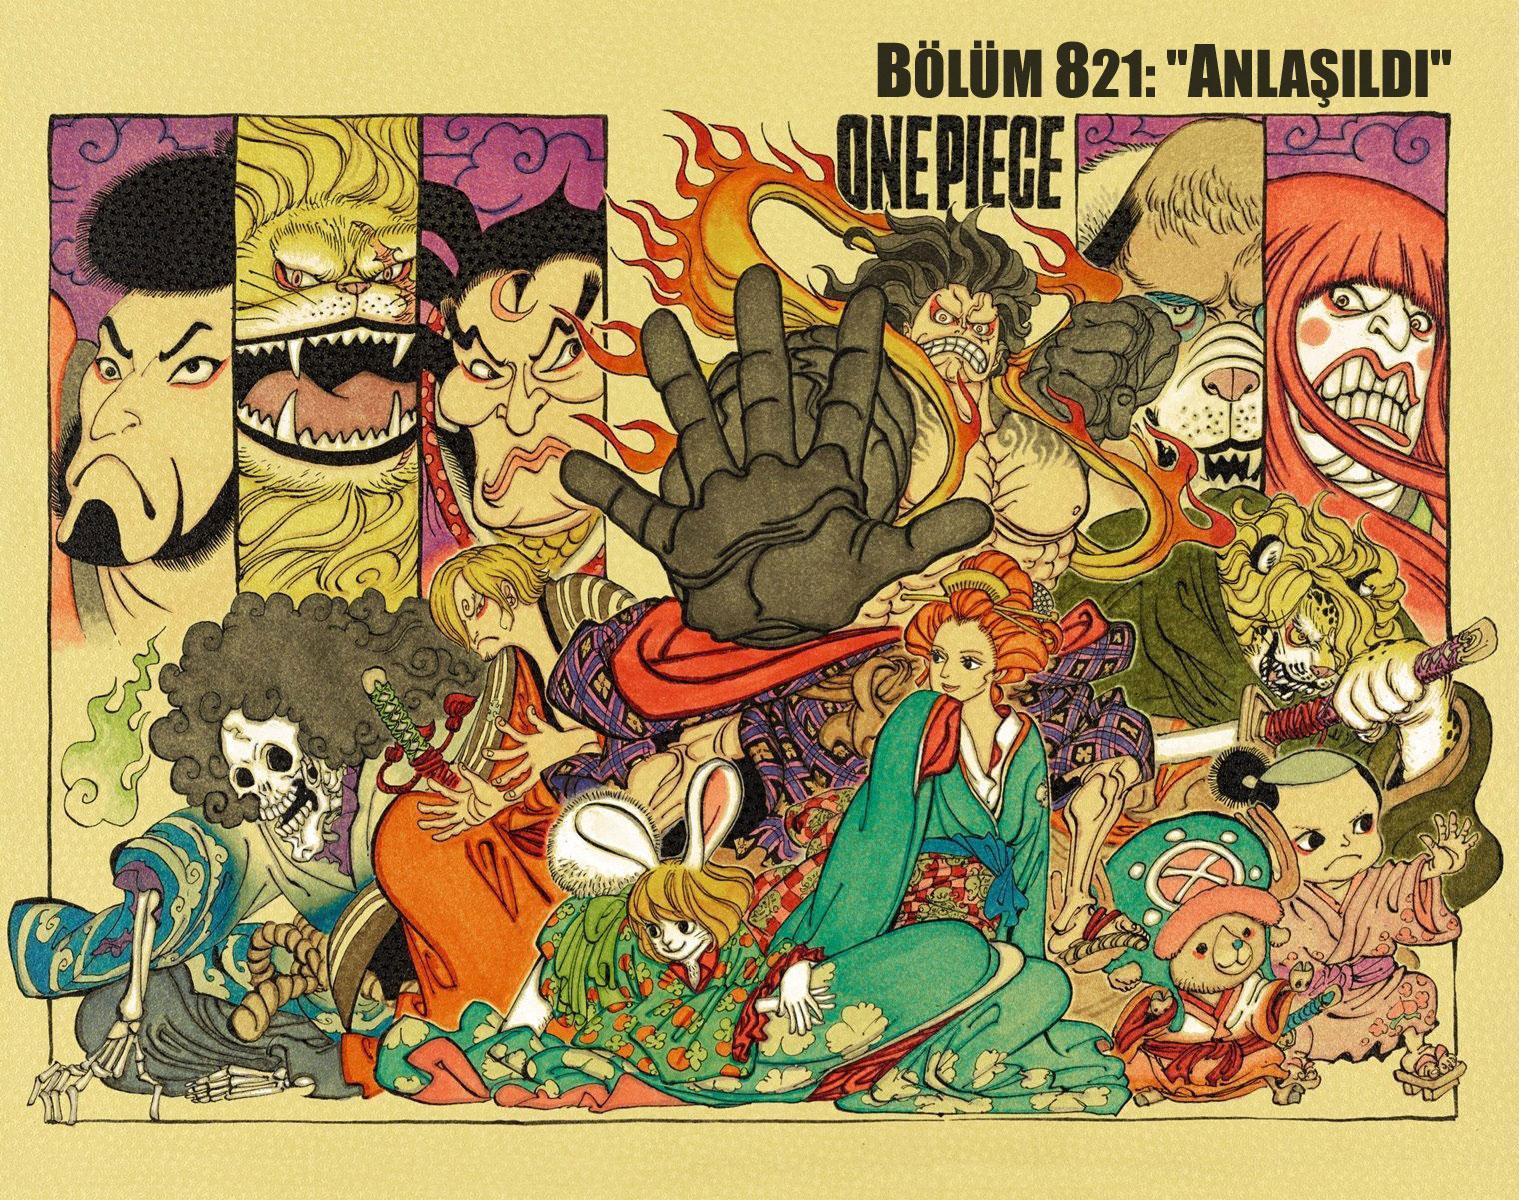 One Piece [Renkli] mangasının 821 bölümünün 2. sayfasını okuyorsunuz.